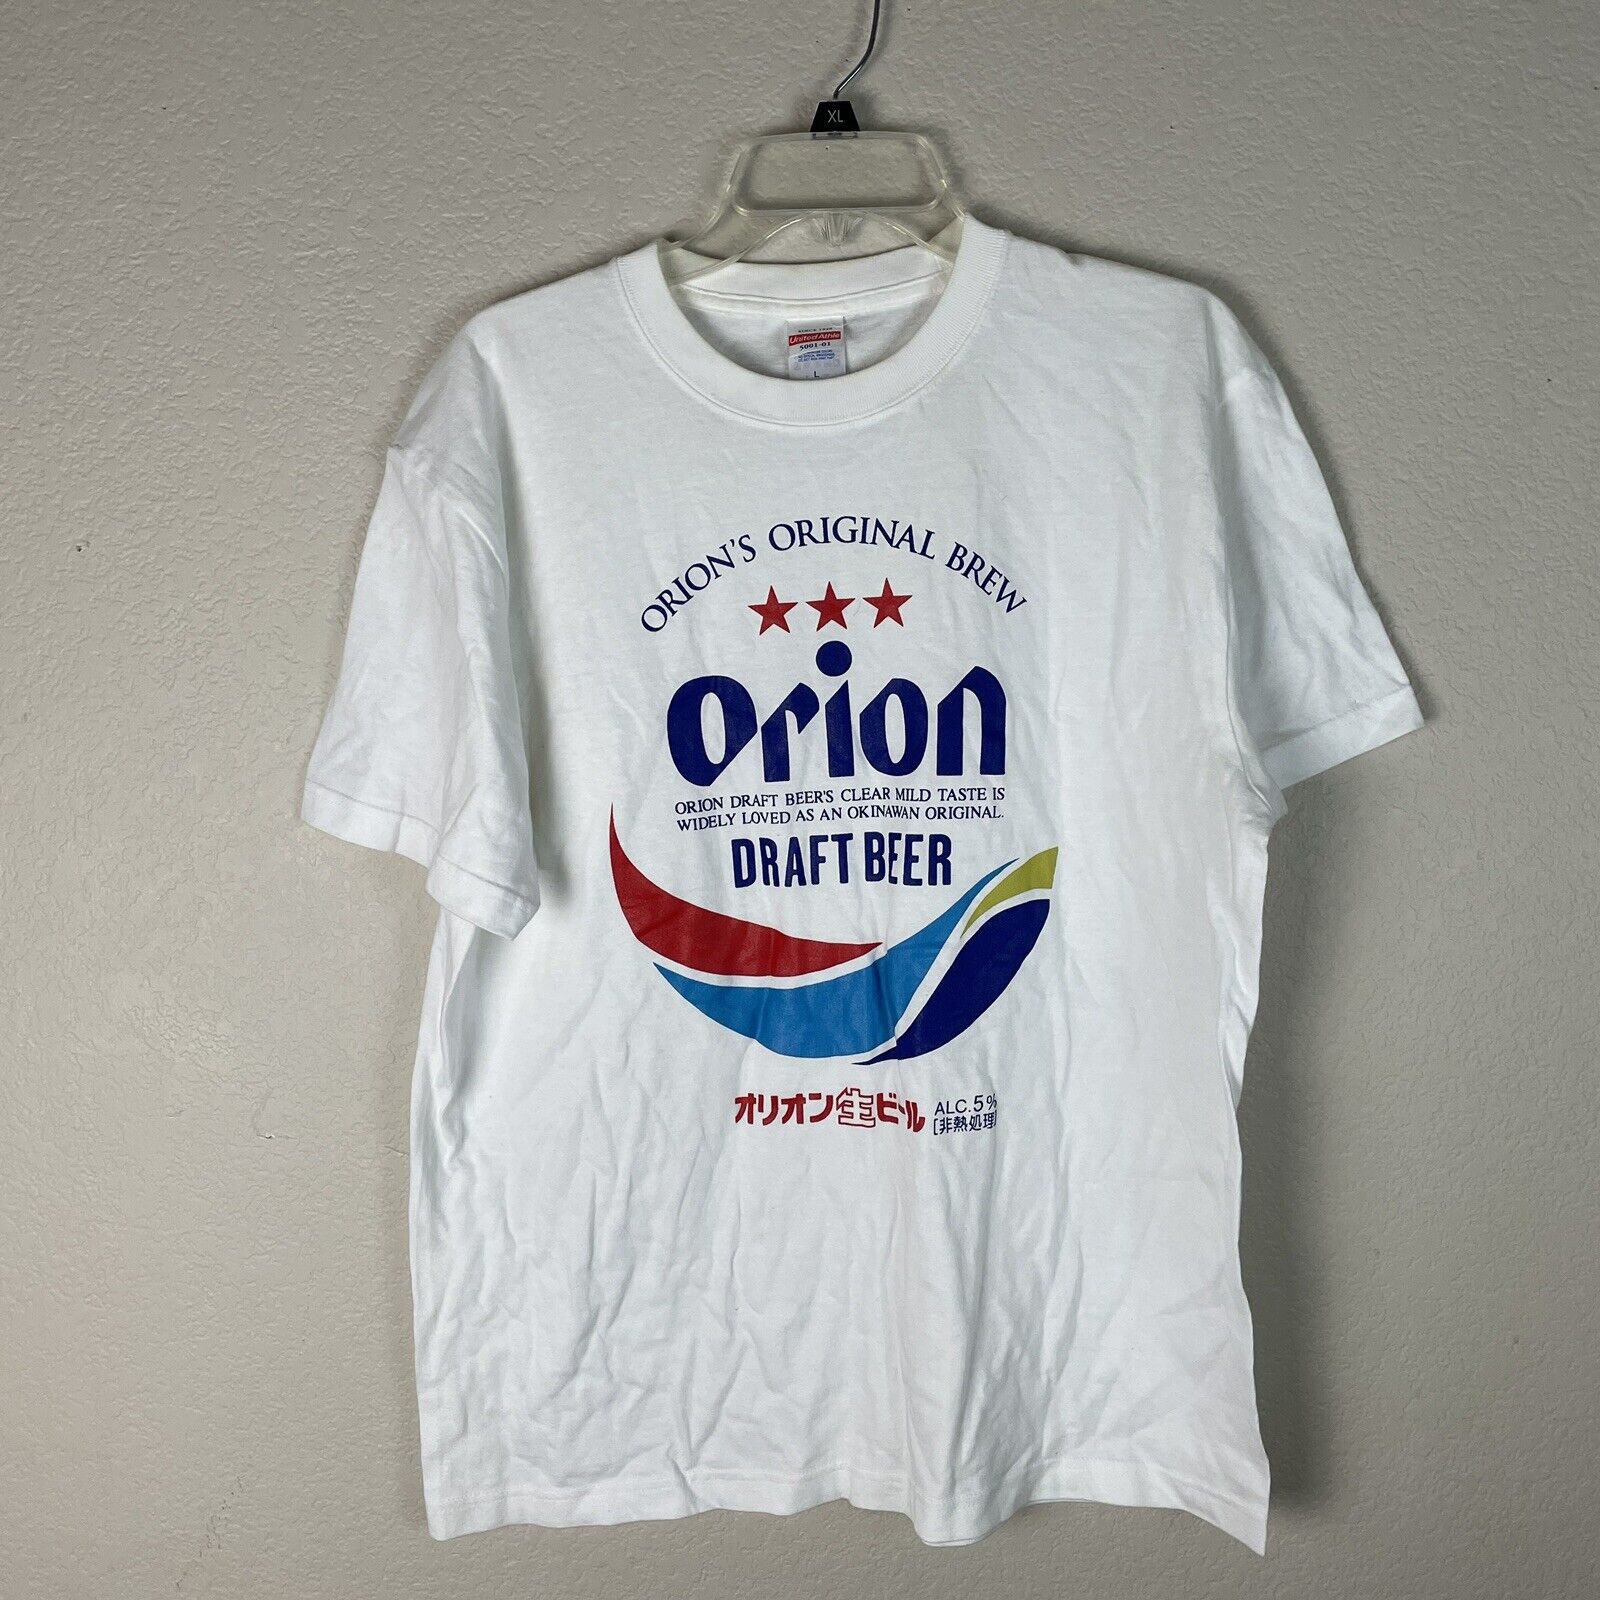 Vintage Orion Draft Beer Shirt Size Large